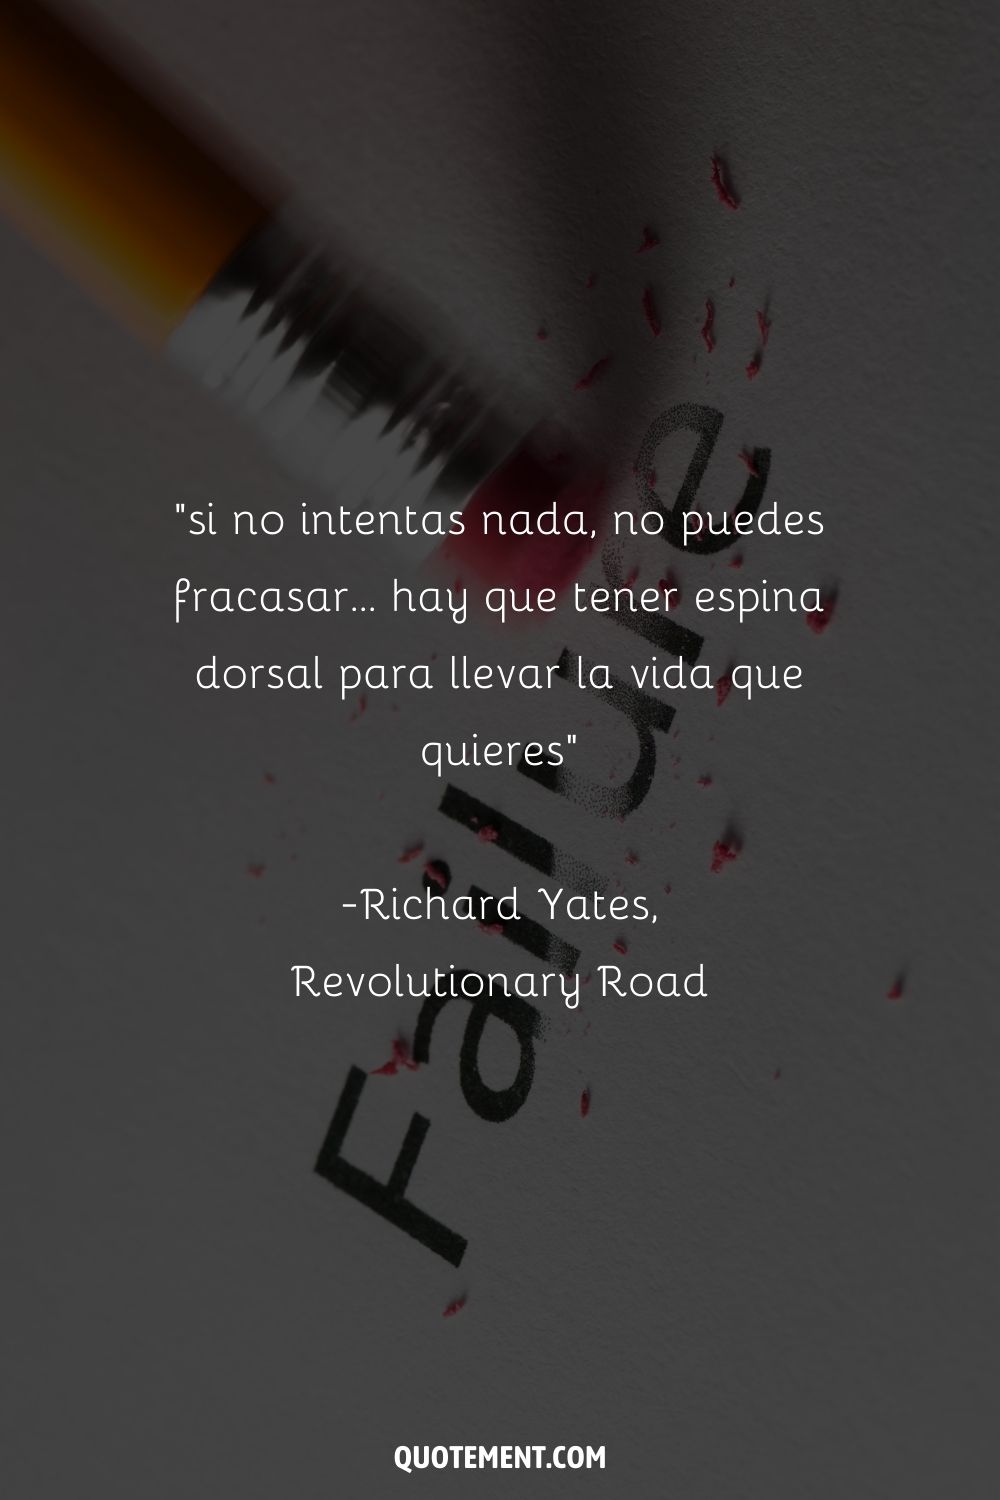 "Si no intentas nada, no puedes fracasar... hay que tener espina dorsal para llevar la vida que quieres" - Richard Yates, Revolutionary Road